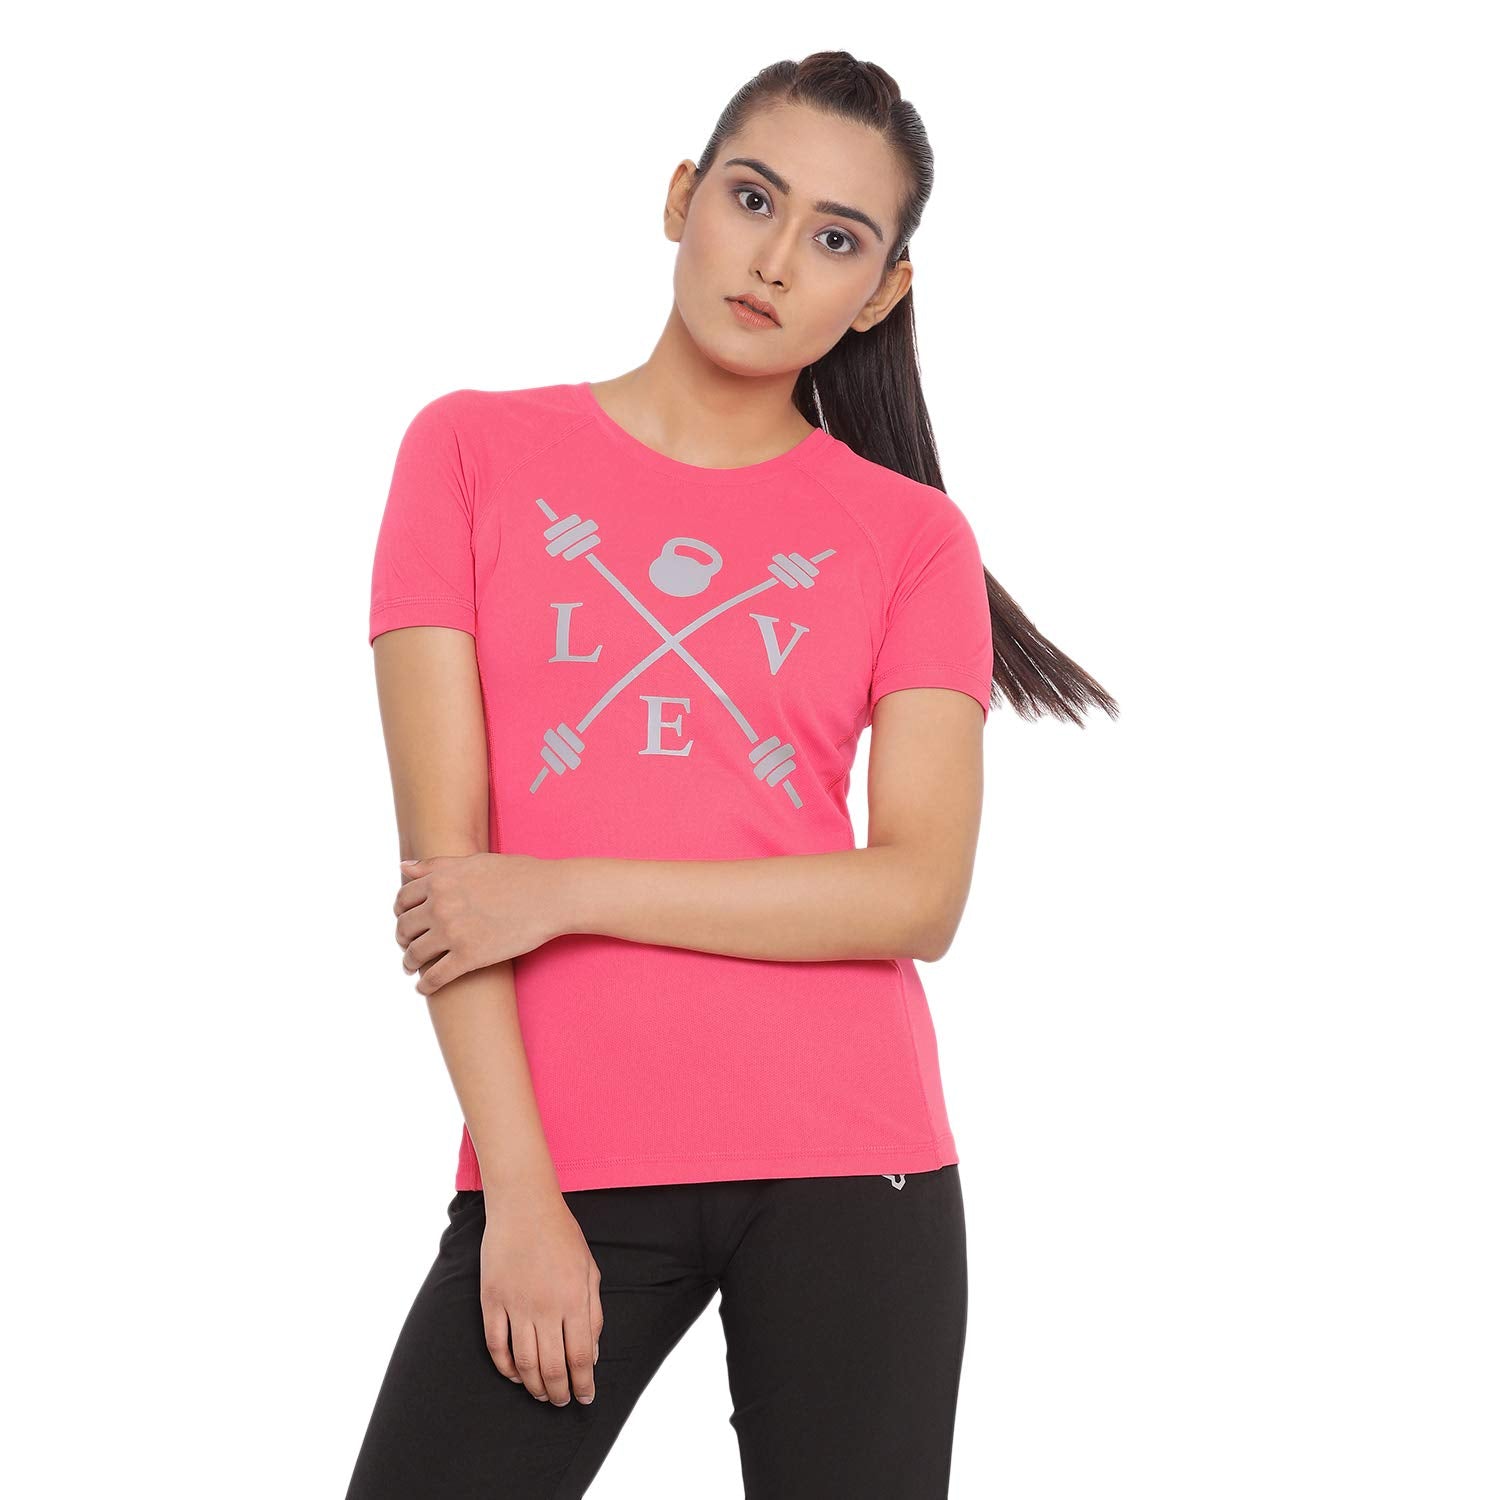 Buy Kyodan Women's Knotty Flex T-Shirt Online India